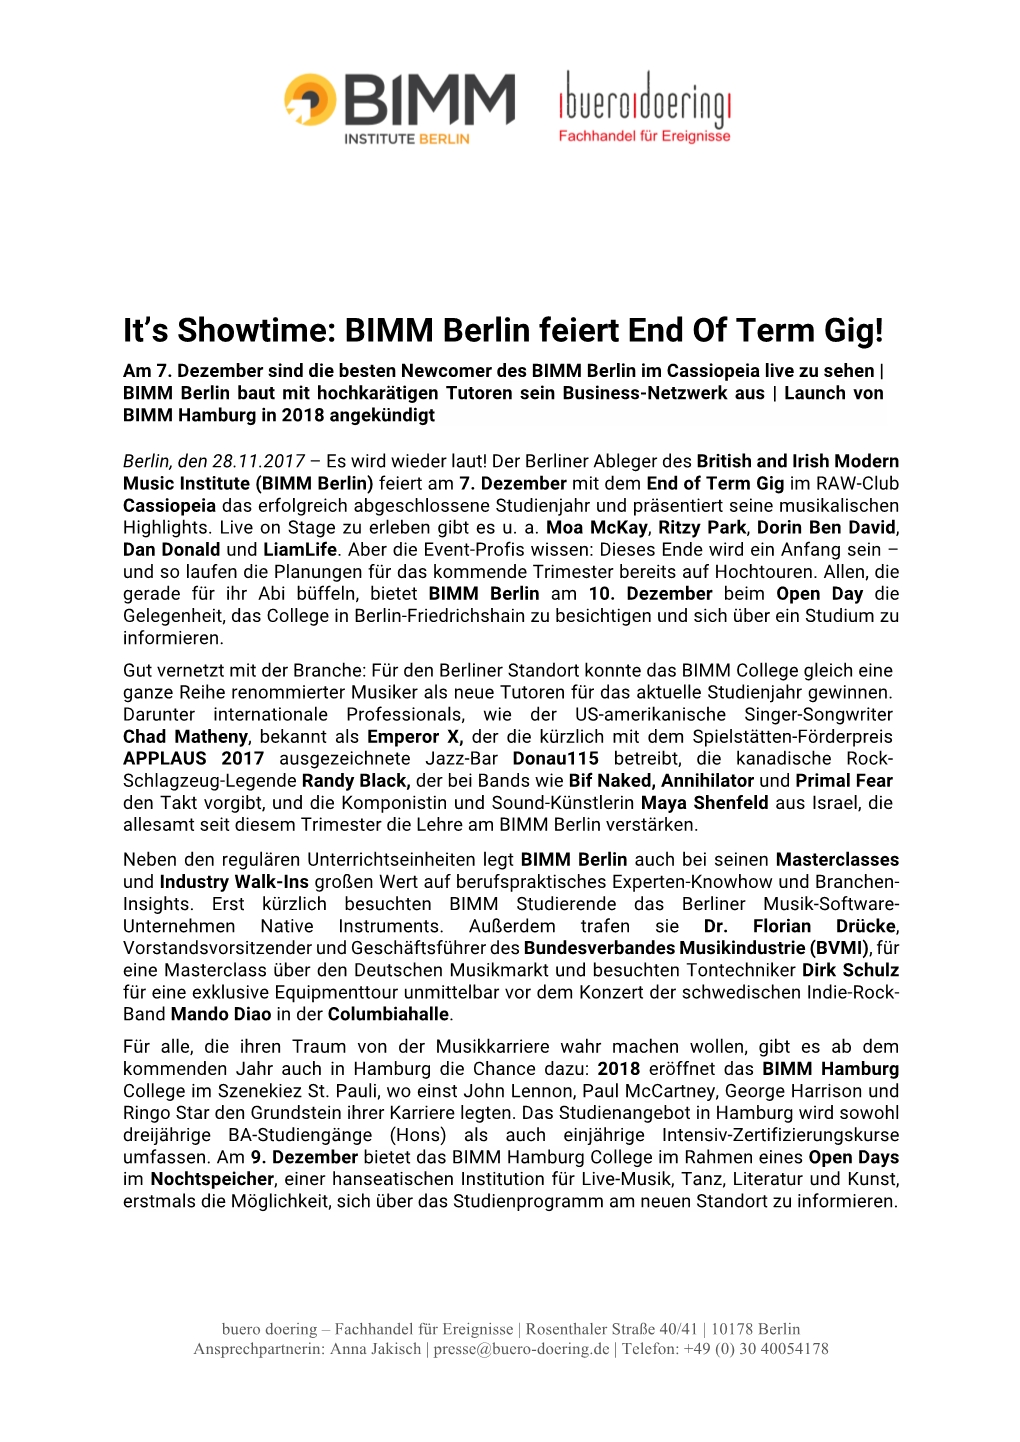 BIMM Berlin Feiert End of Term Gig!